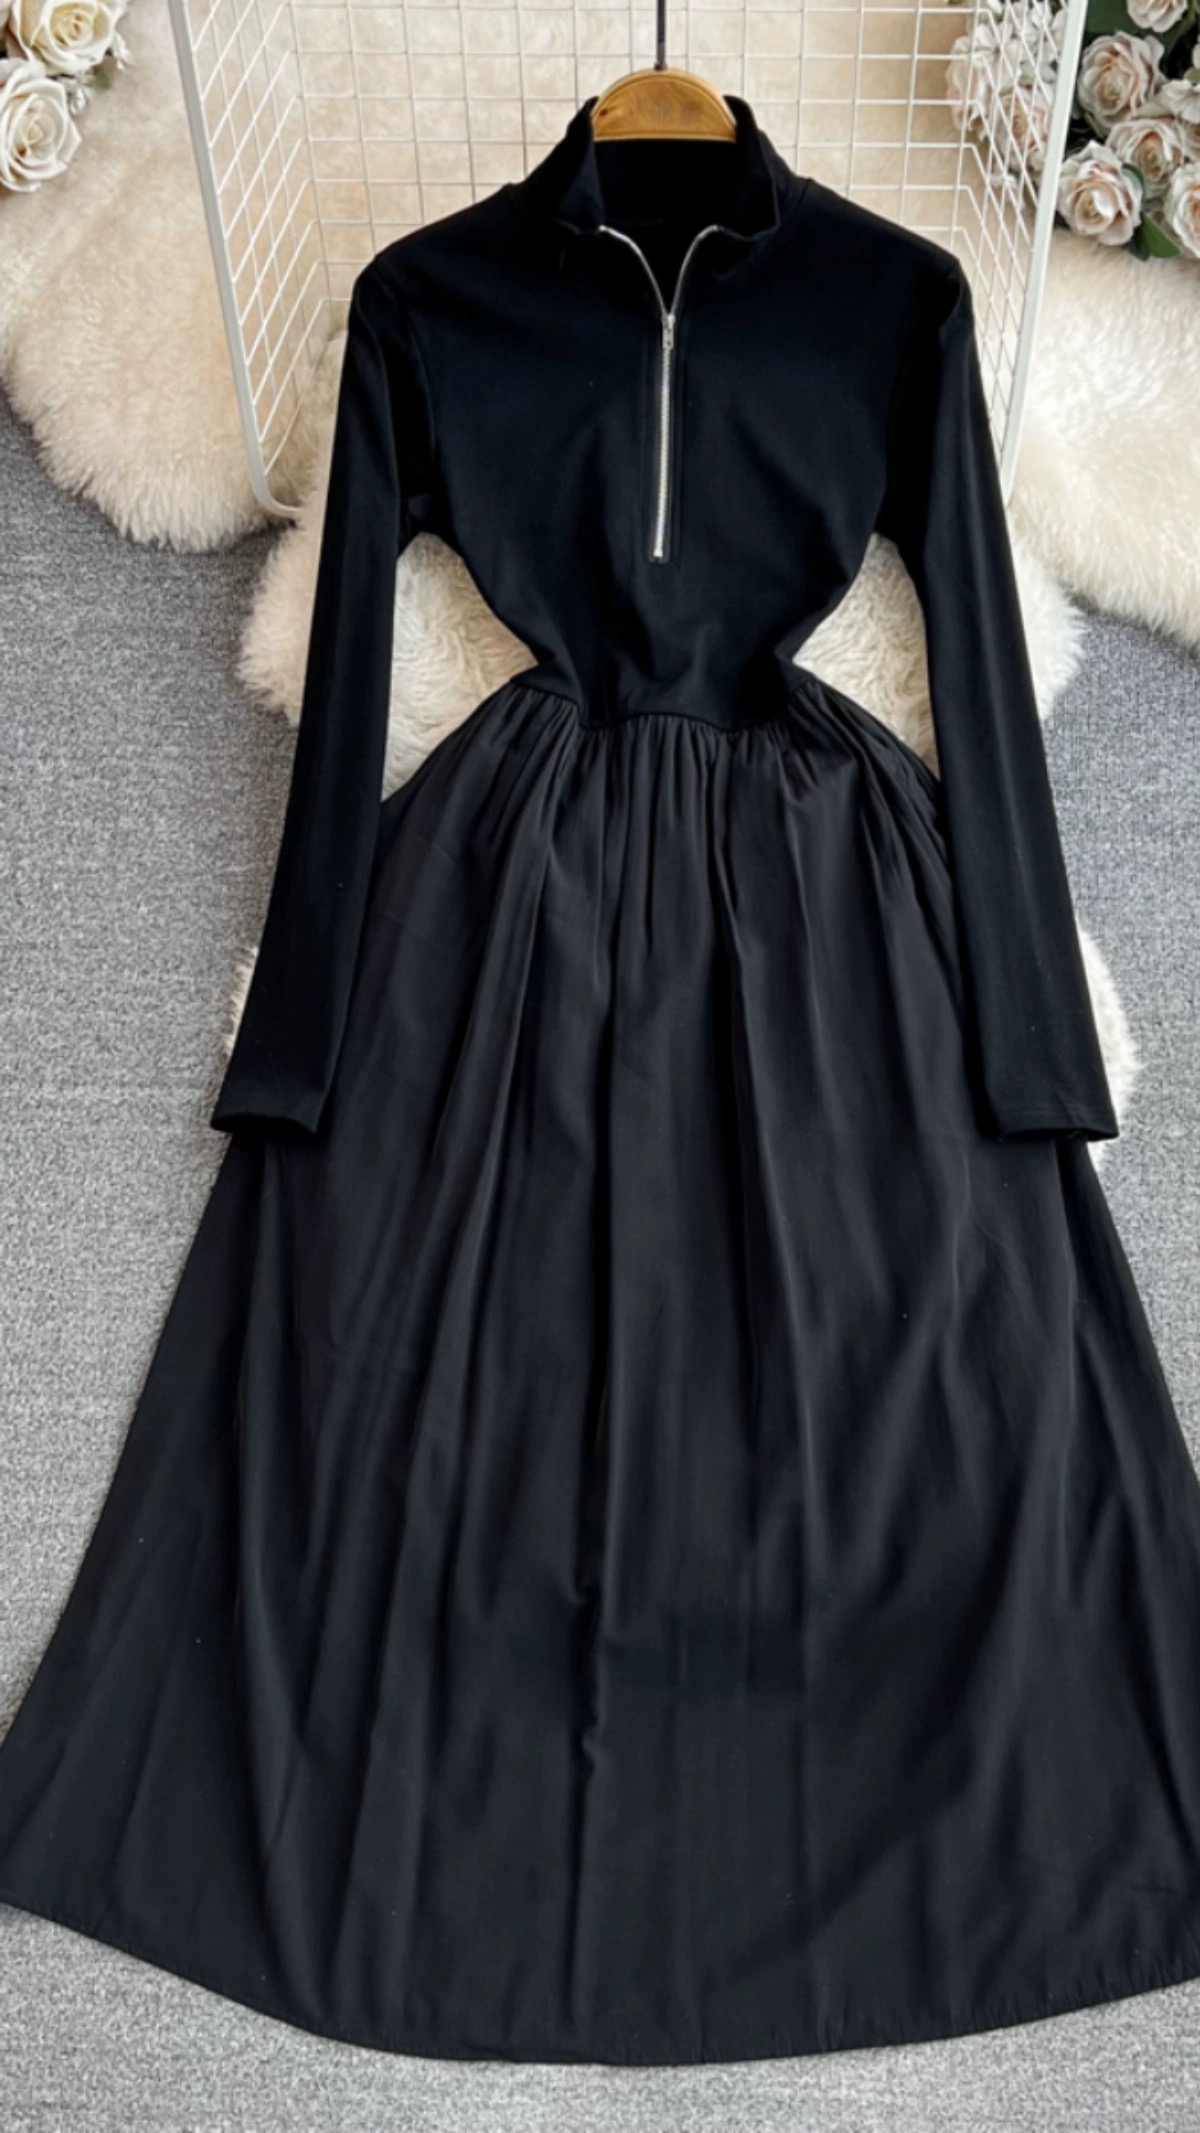 Long Sleeves Black Dress, Half High Neck Zip-up Waist Dress, A-line Swing Dress Elegant Long Dress